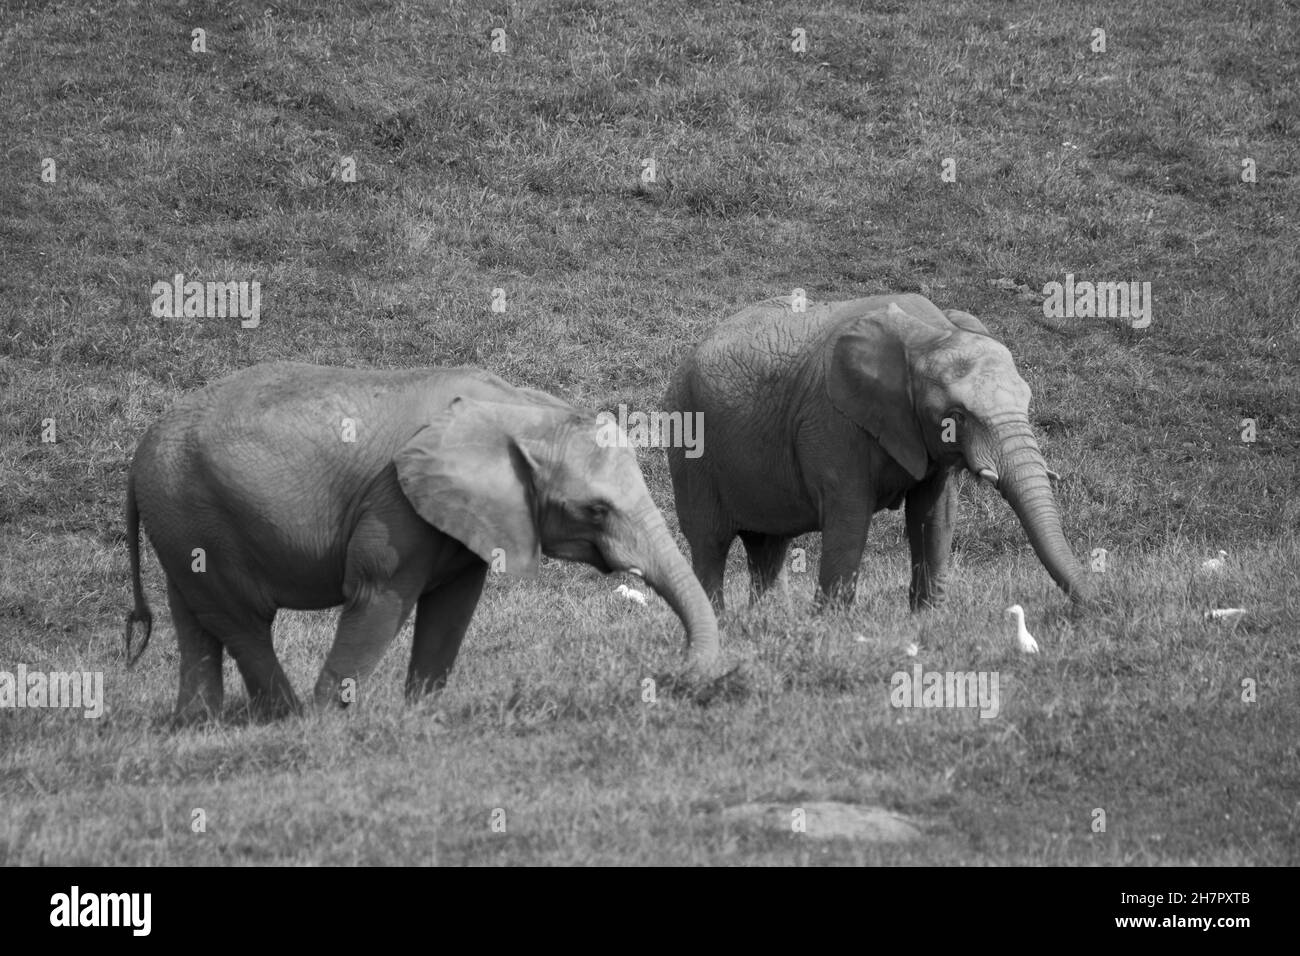 Escala de grises de dos elefantes caminando en un campo Foto de stock